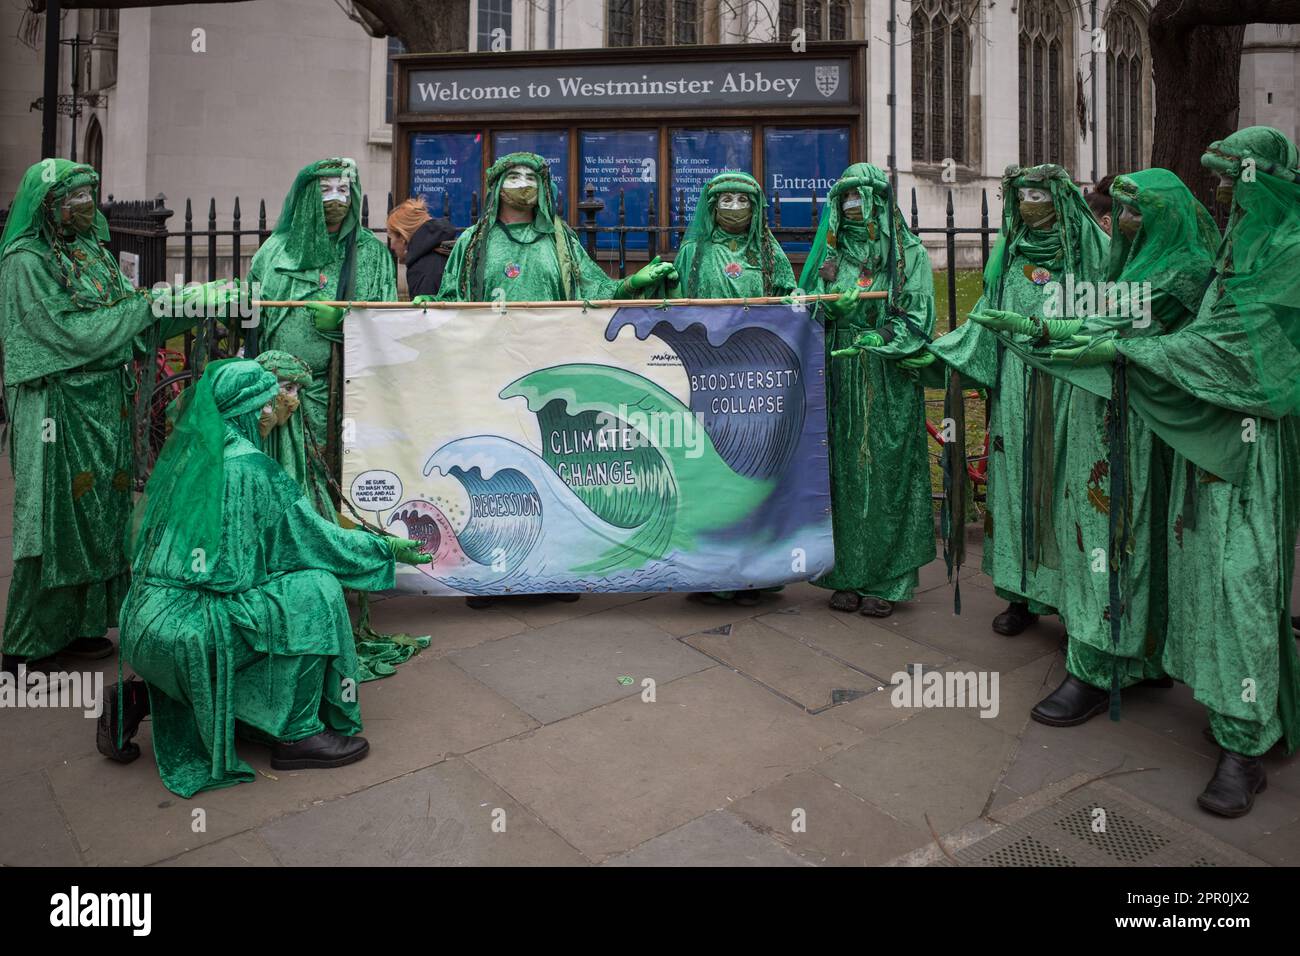 Les rebelles verts ralentissent la marche vers le Parlement, le Big One, le week-end de la rébellion d'extinction, le 2023 avril. Activistes de l'environnement de Street Performing. Banque D'Images